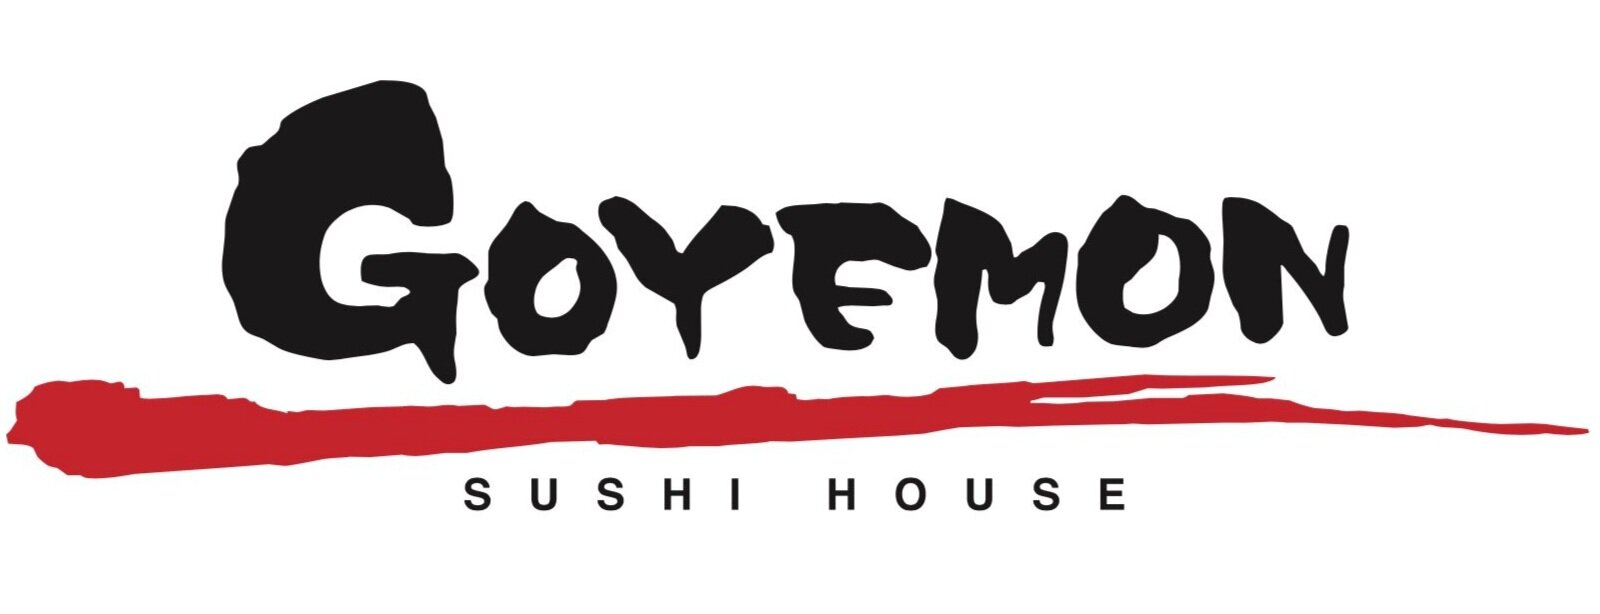 Sushi House Goyemon — Mon Restaurant Group